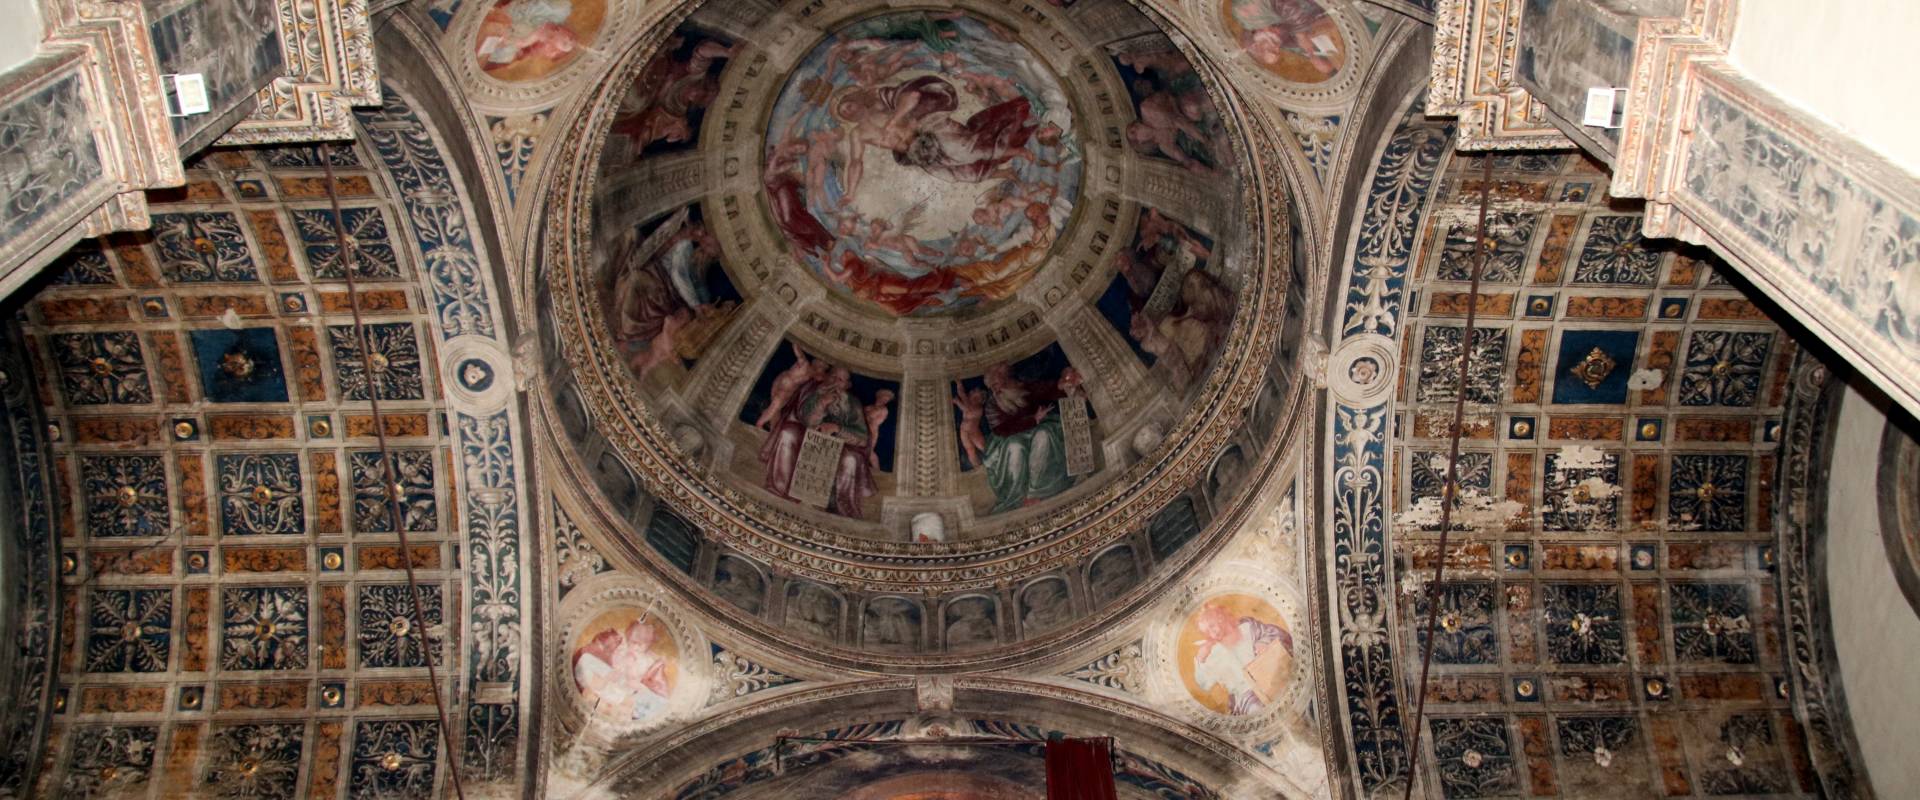 Chiesa di San Sisto (Piacenza), interno 57 foto di Mongolo1984